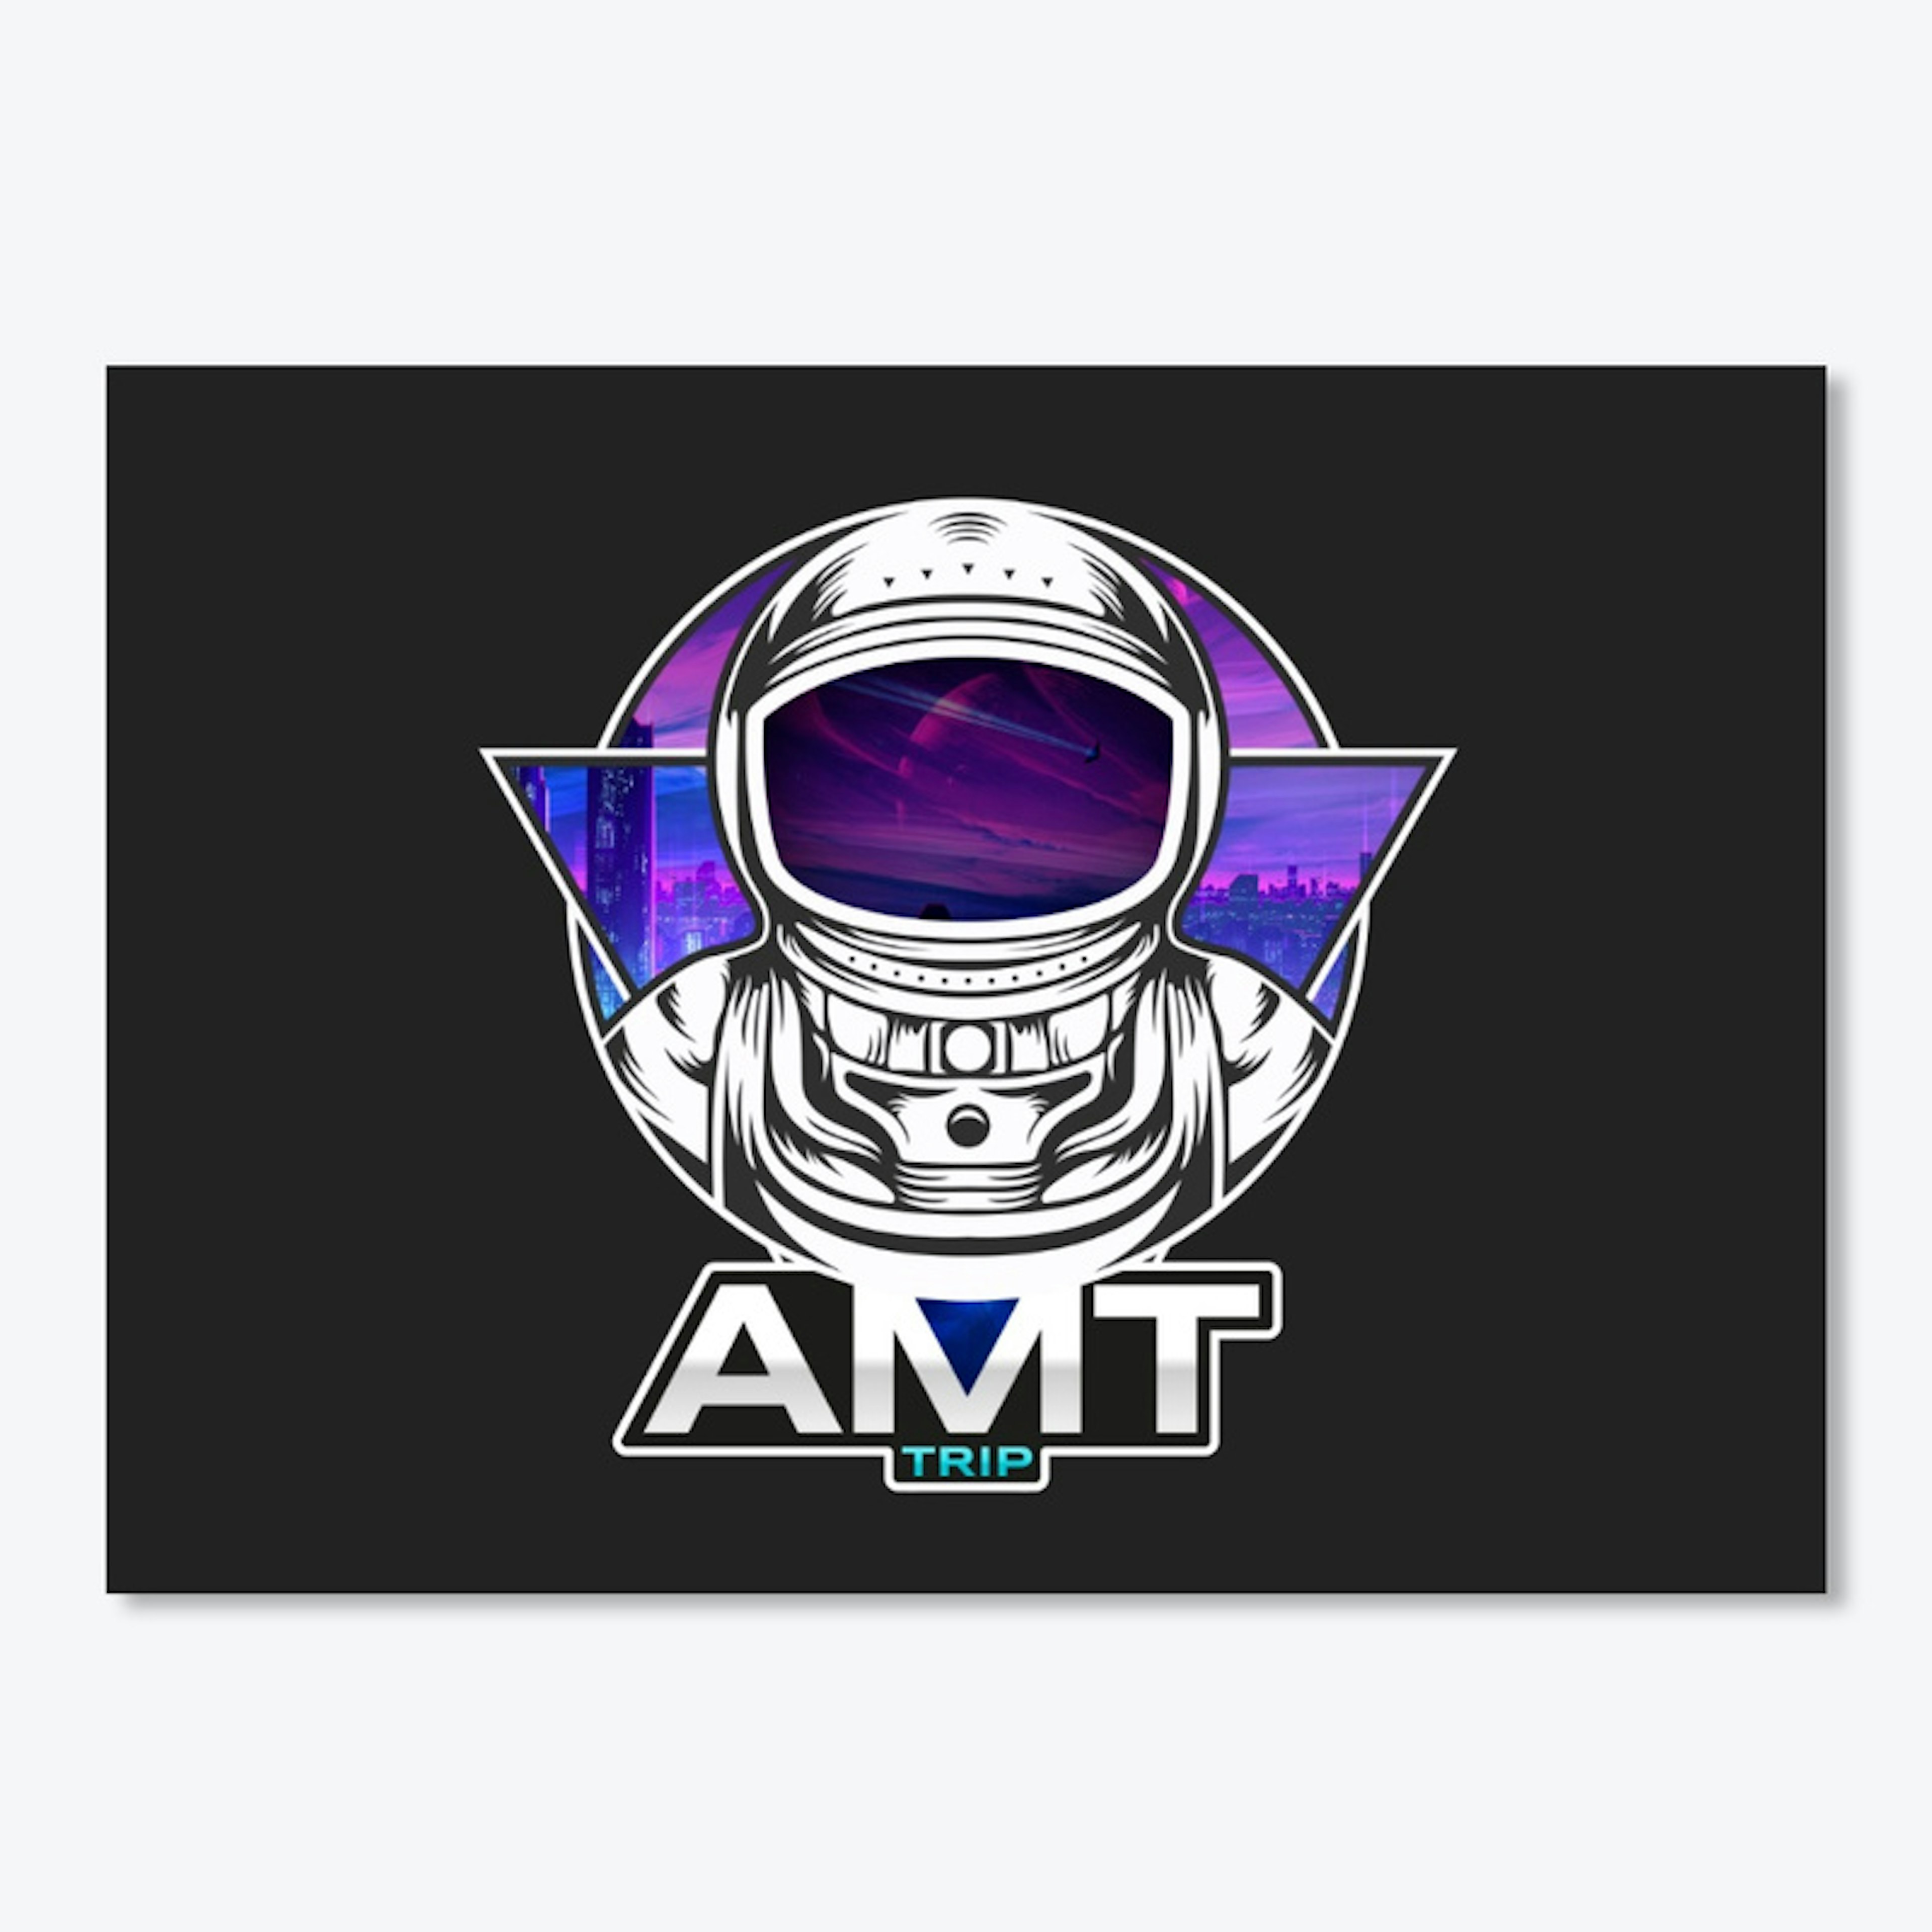 Astronaut AMT design